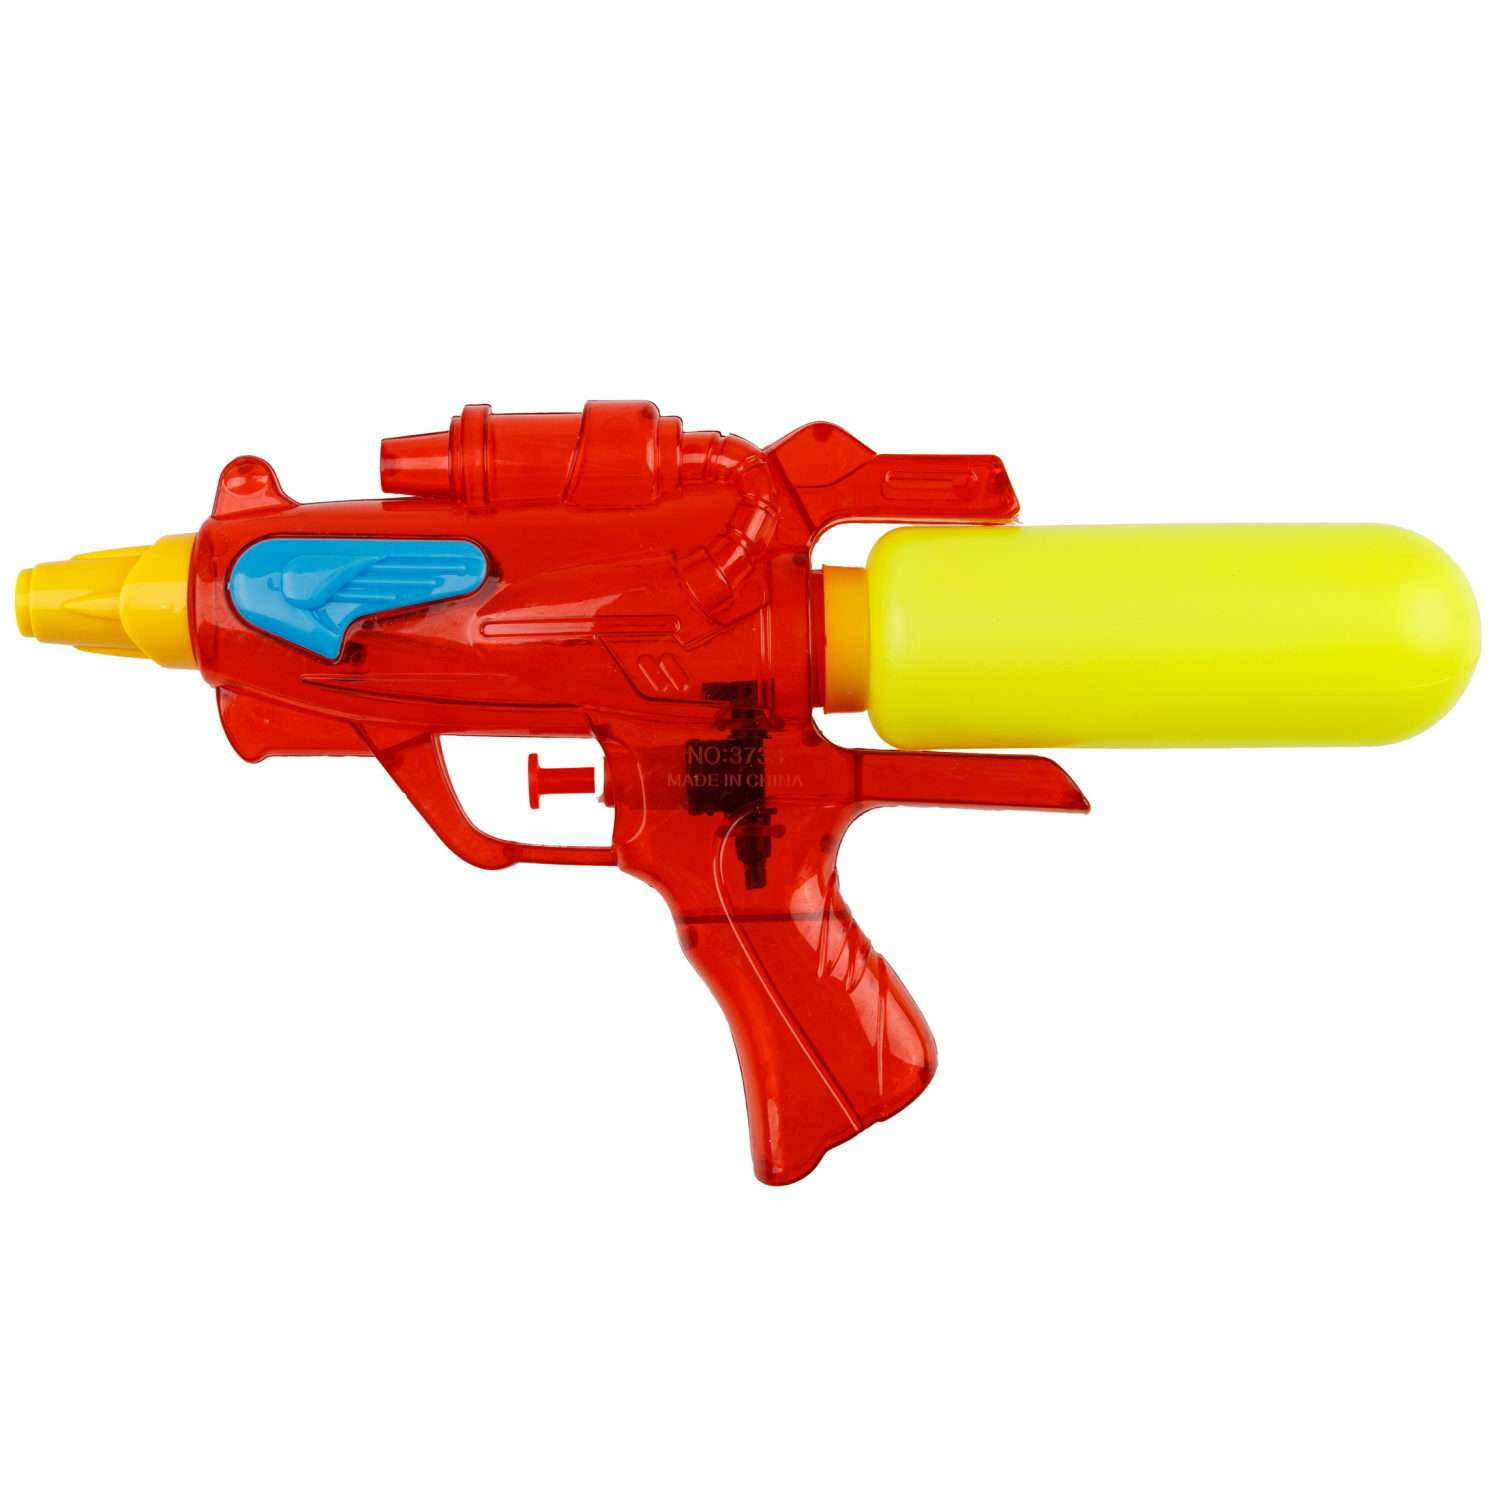 Водяной пистолет Аквамания 1TOY детское игрушечное оружие - фото 2